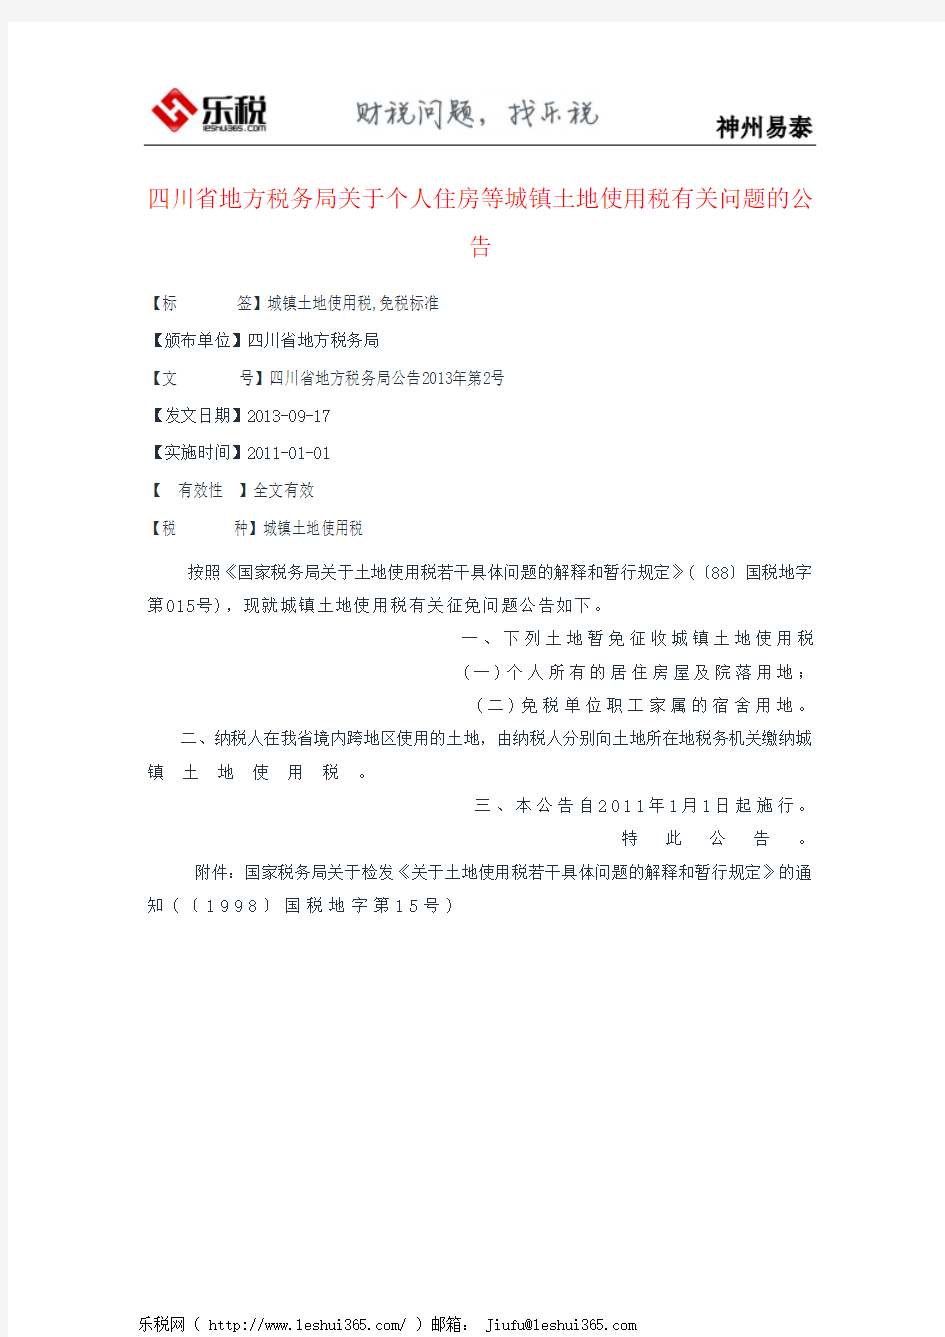 四川省地方税务局关于个人住房等城镇土地使用税有关问题的公告